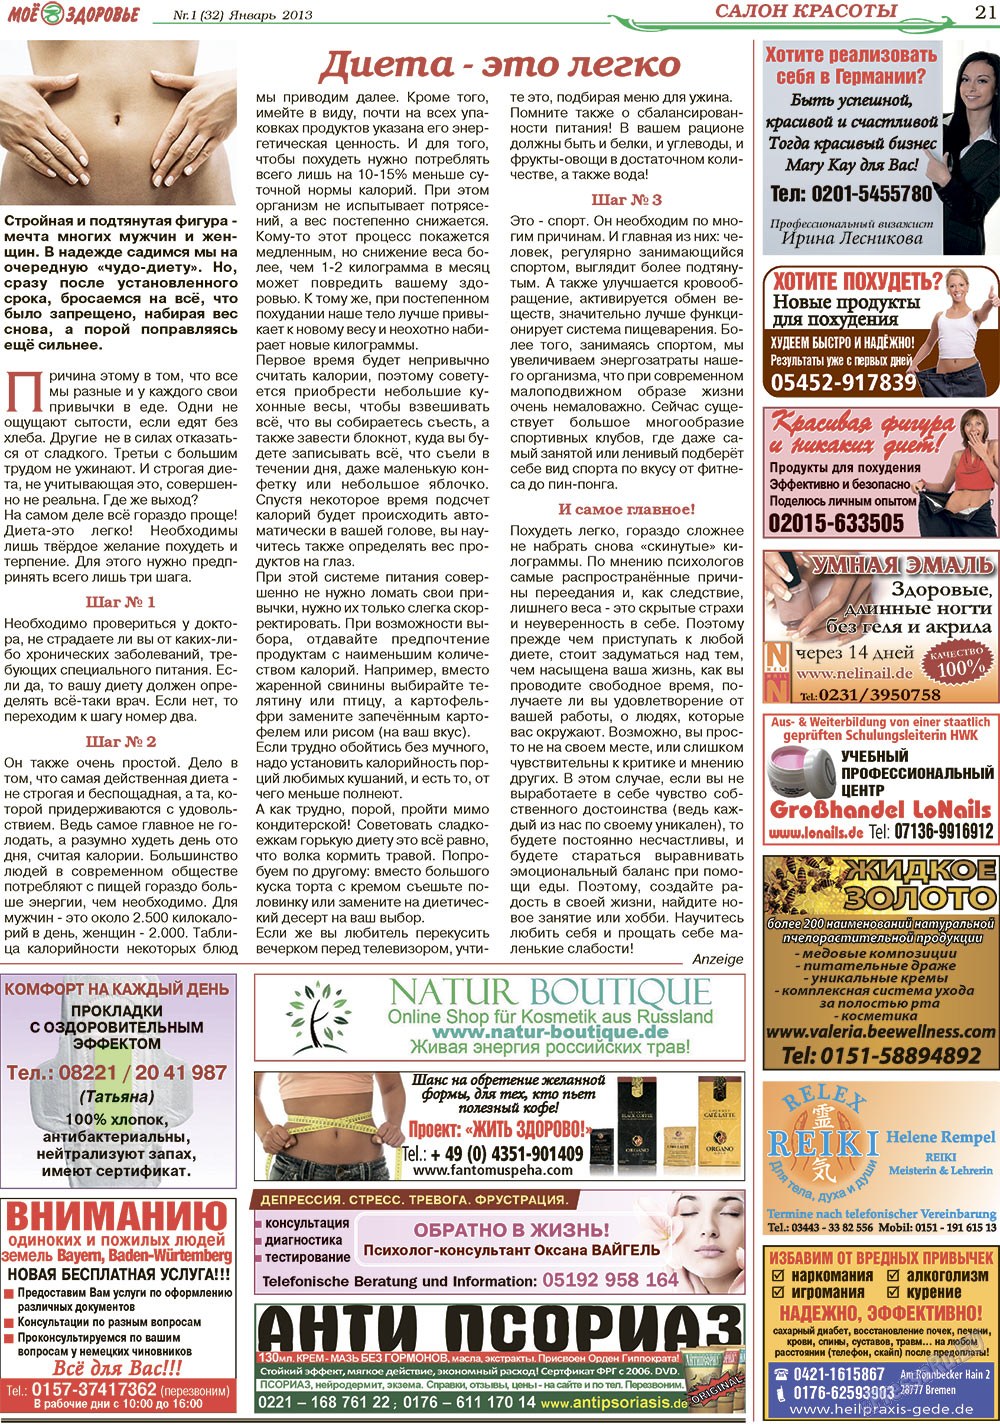 Кругозор, газета. 2013 №1 стр.21